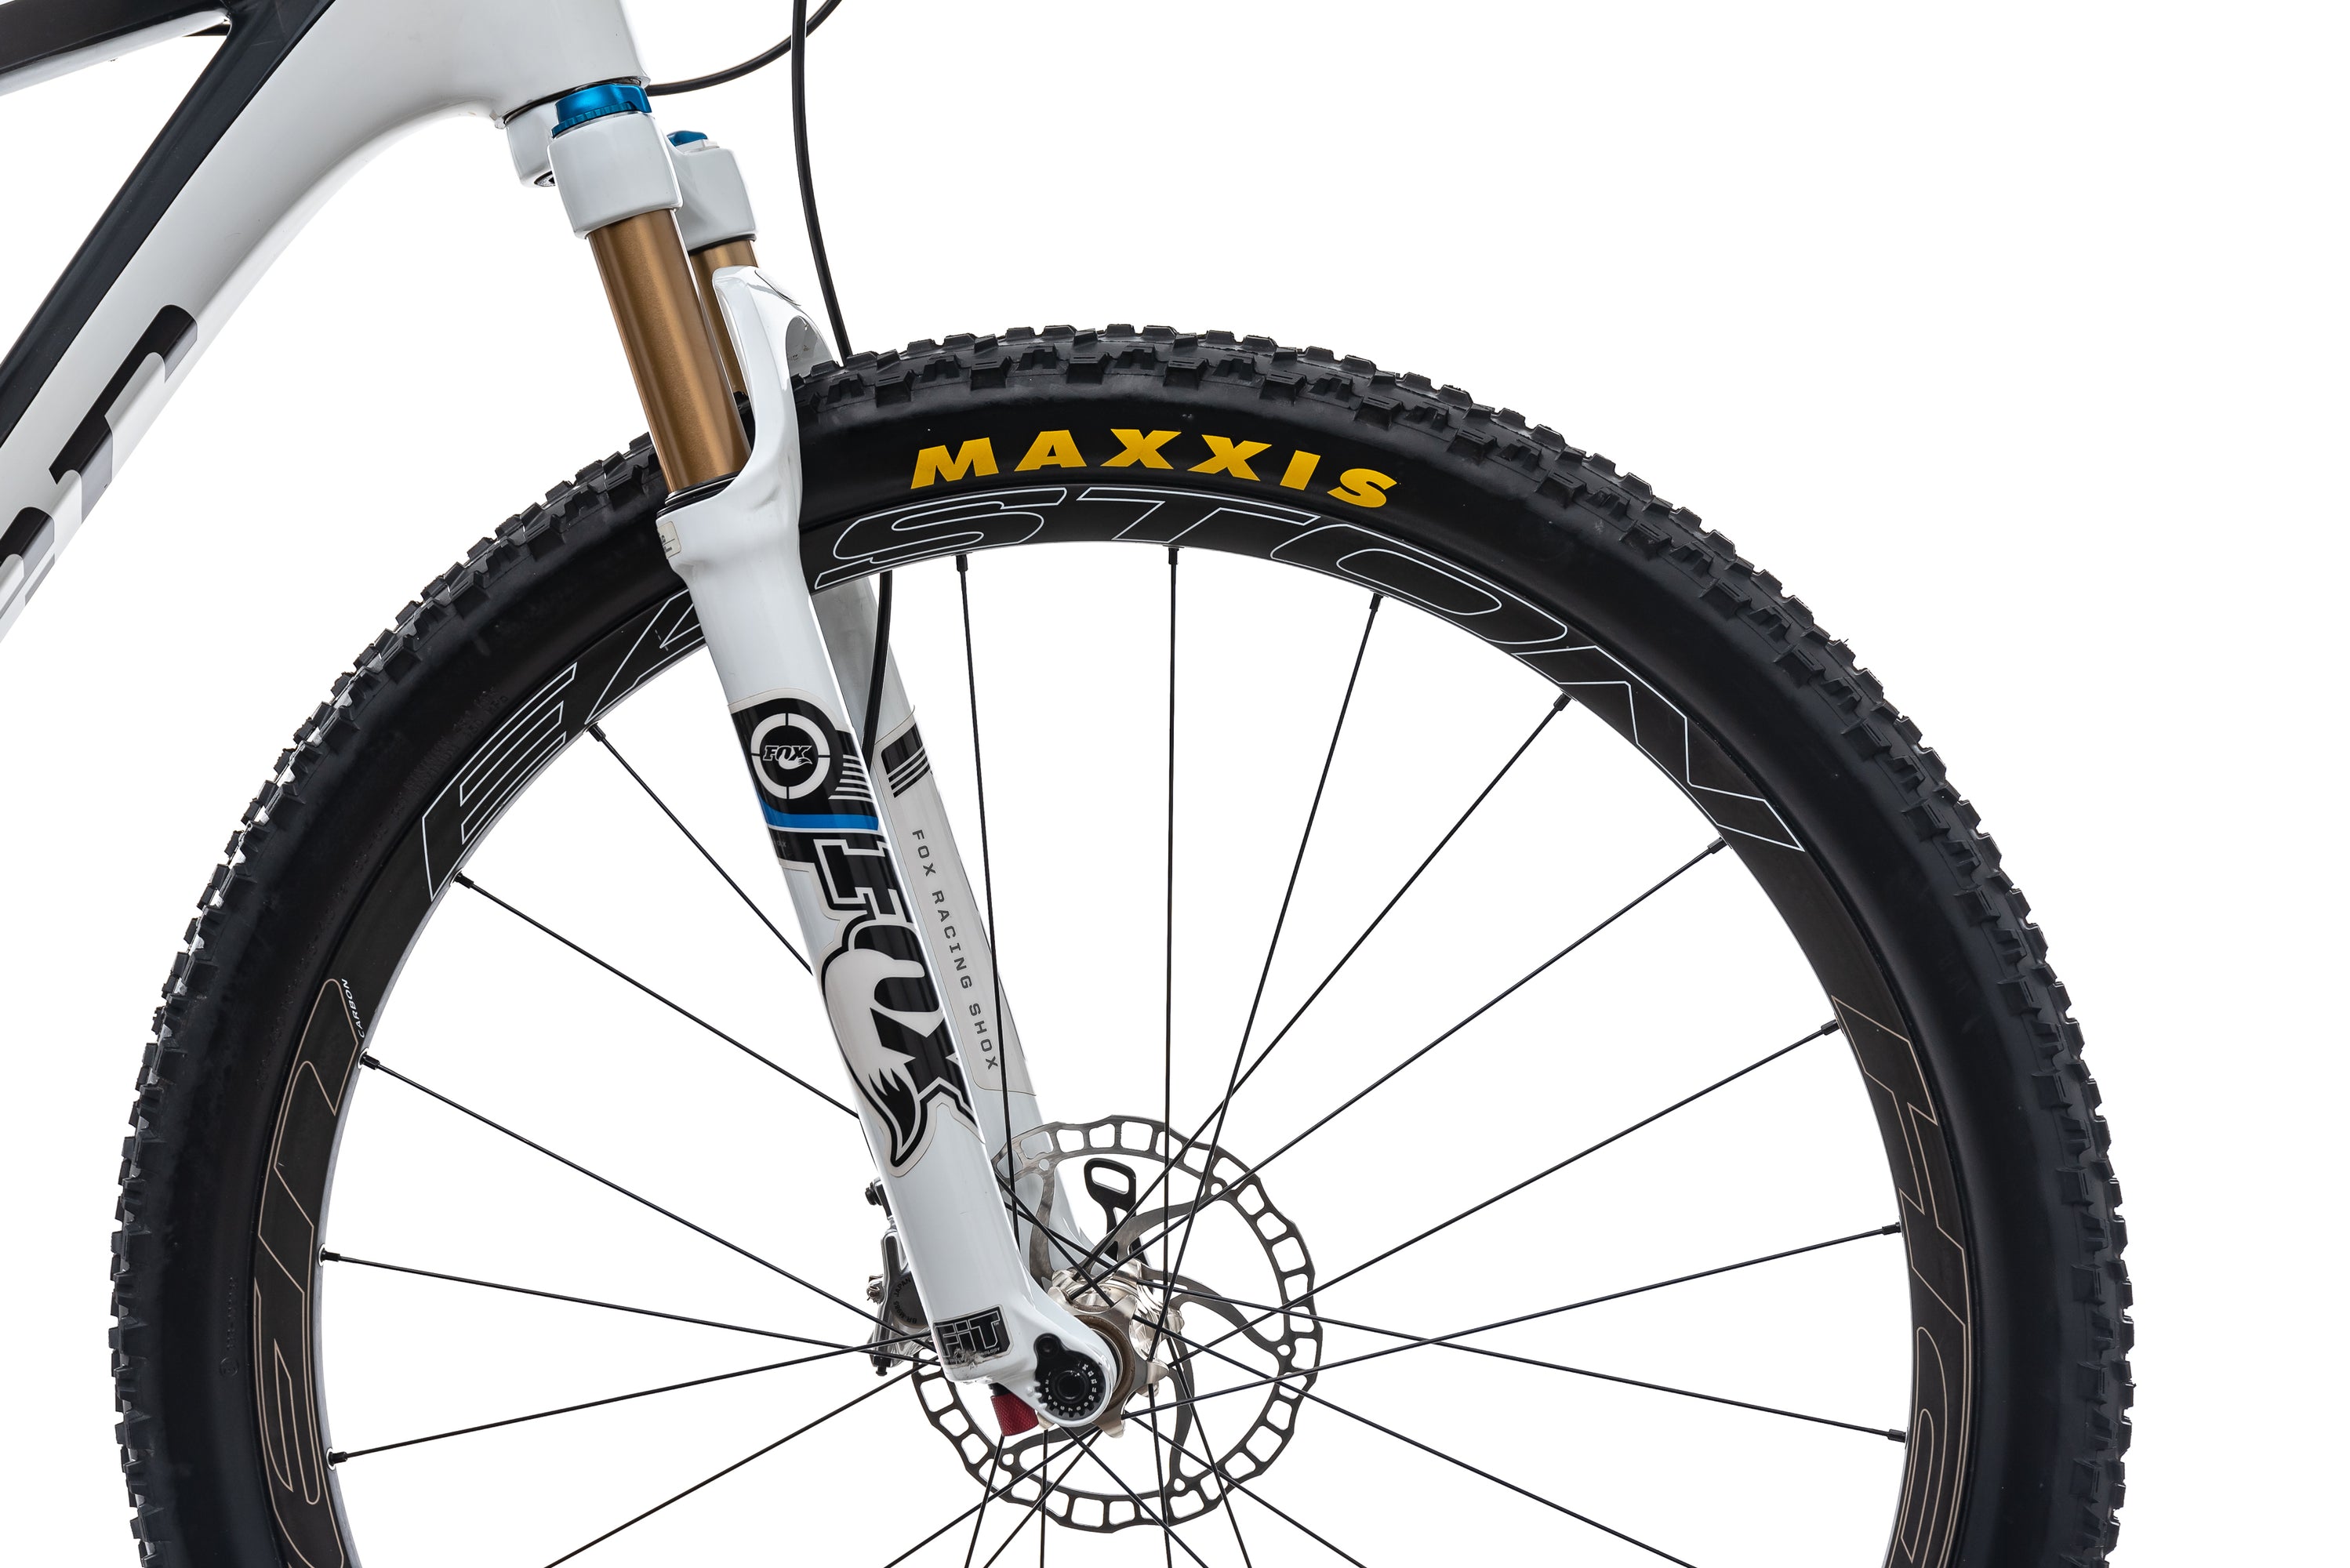 Niner Air 9 Carbon Mountain Bike - 2013, Large front wheel